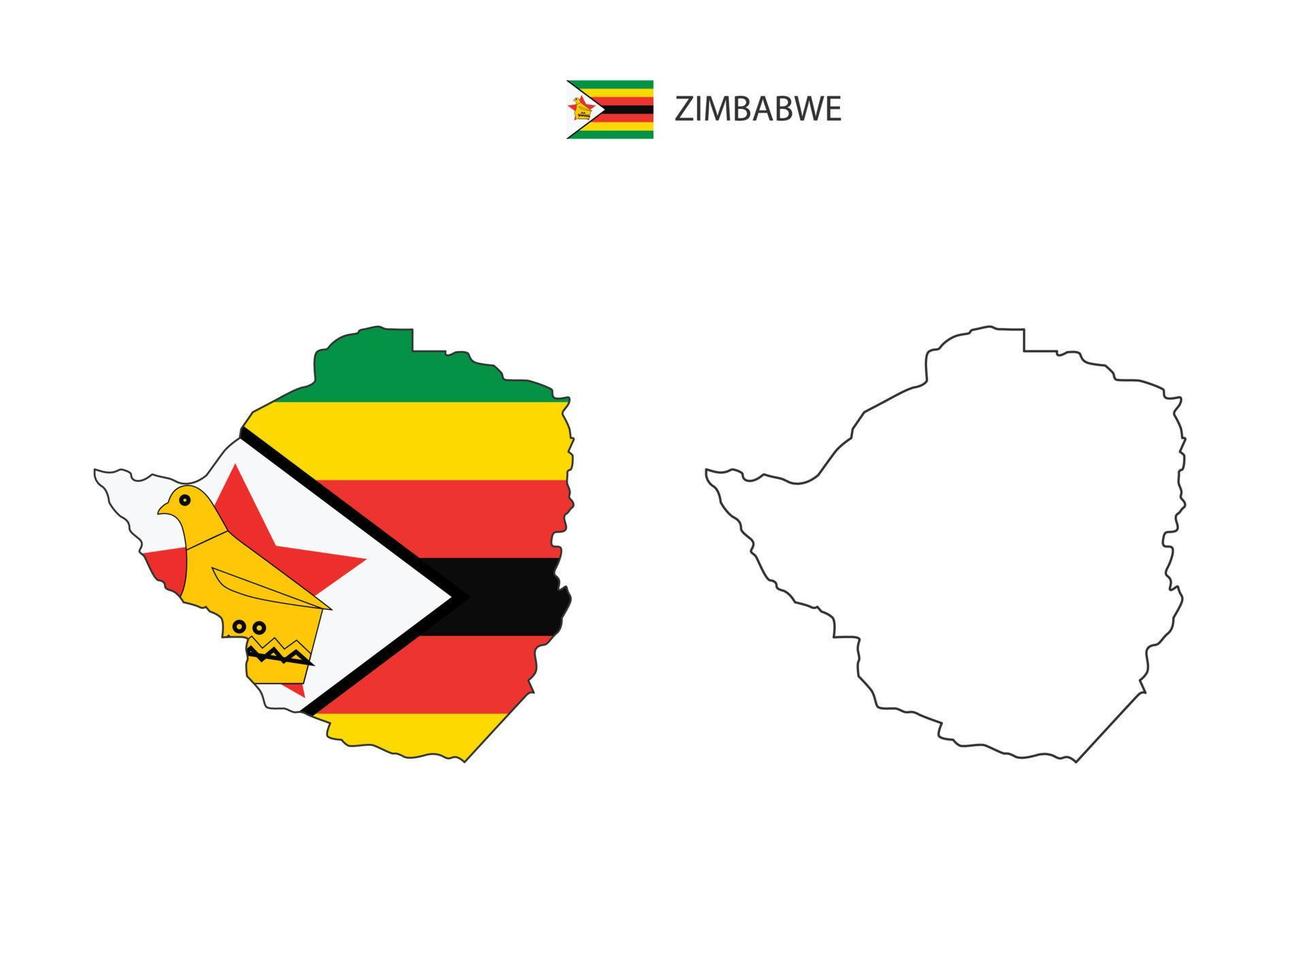 vector de ciudad de mapa de zimbabwe dividido por estilo de simplicidad de contorno. tiene 2 versiones, versión de línea delgada negra y versión de color de bandera de país. ambos mapas estaban en el fondo blanco.